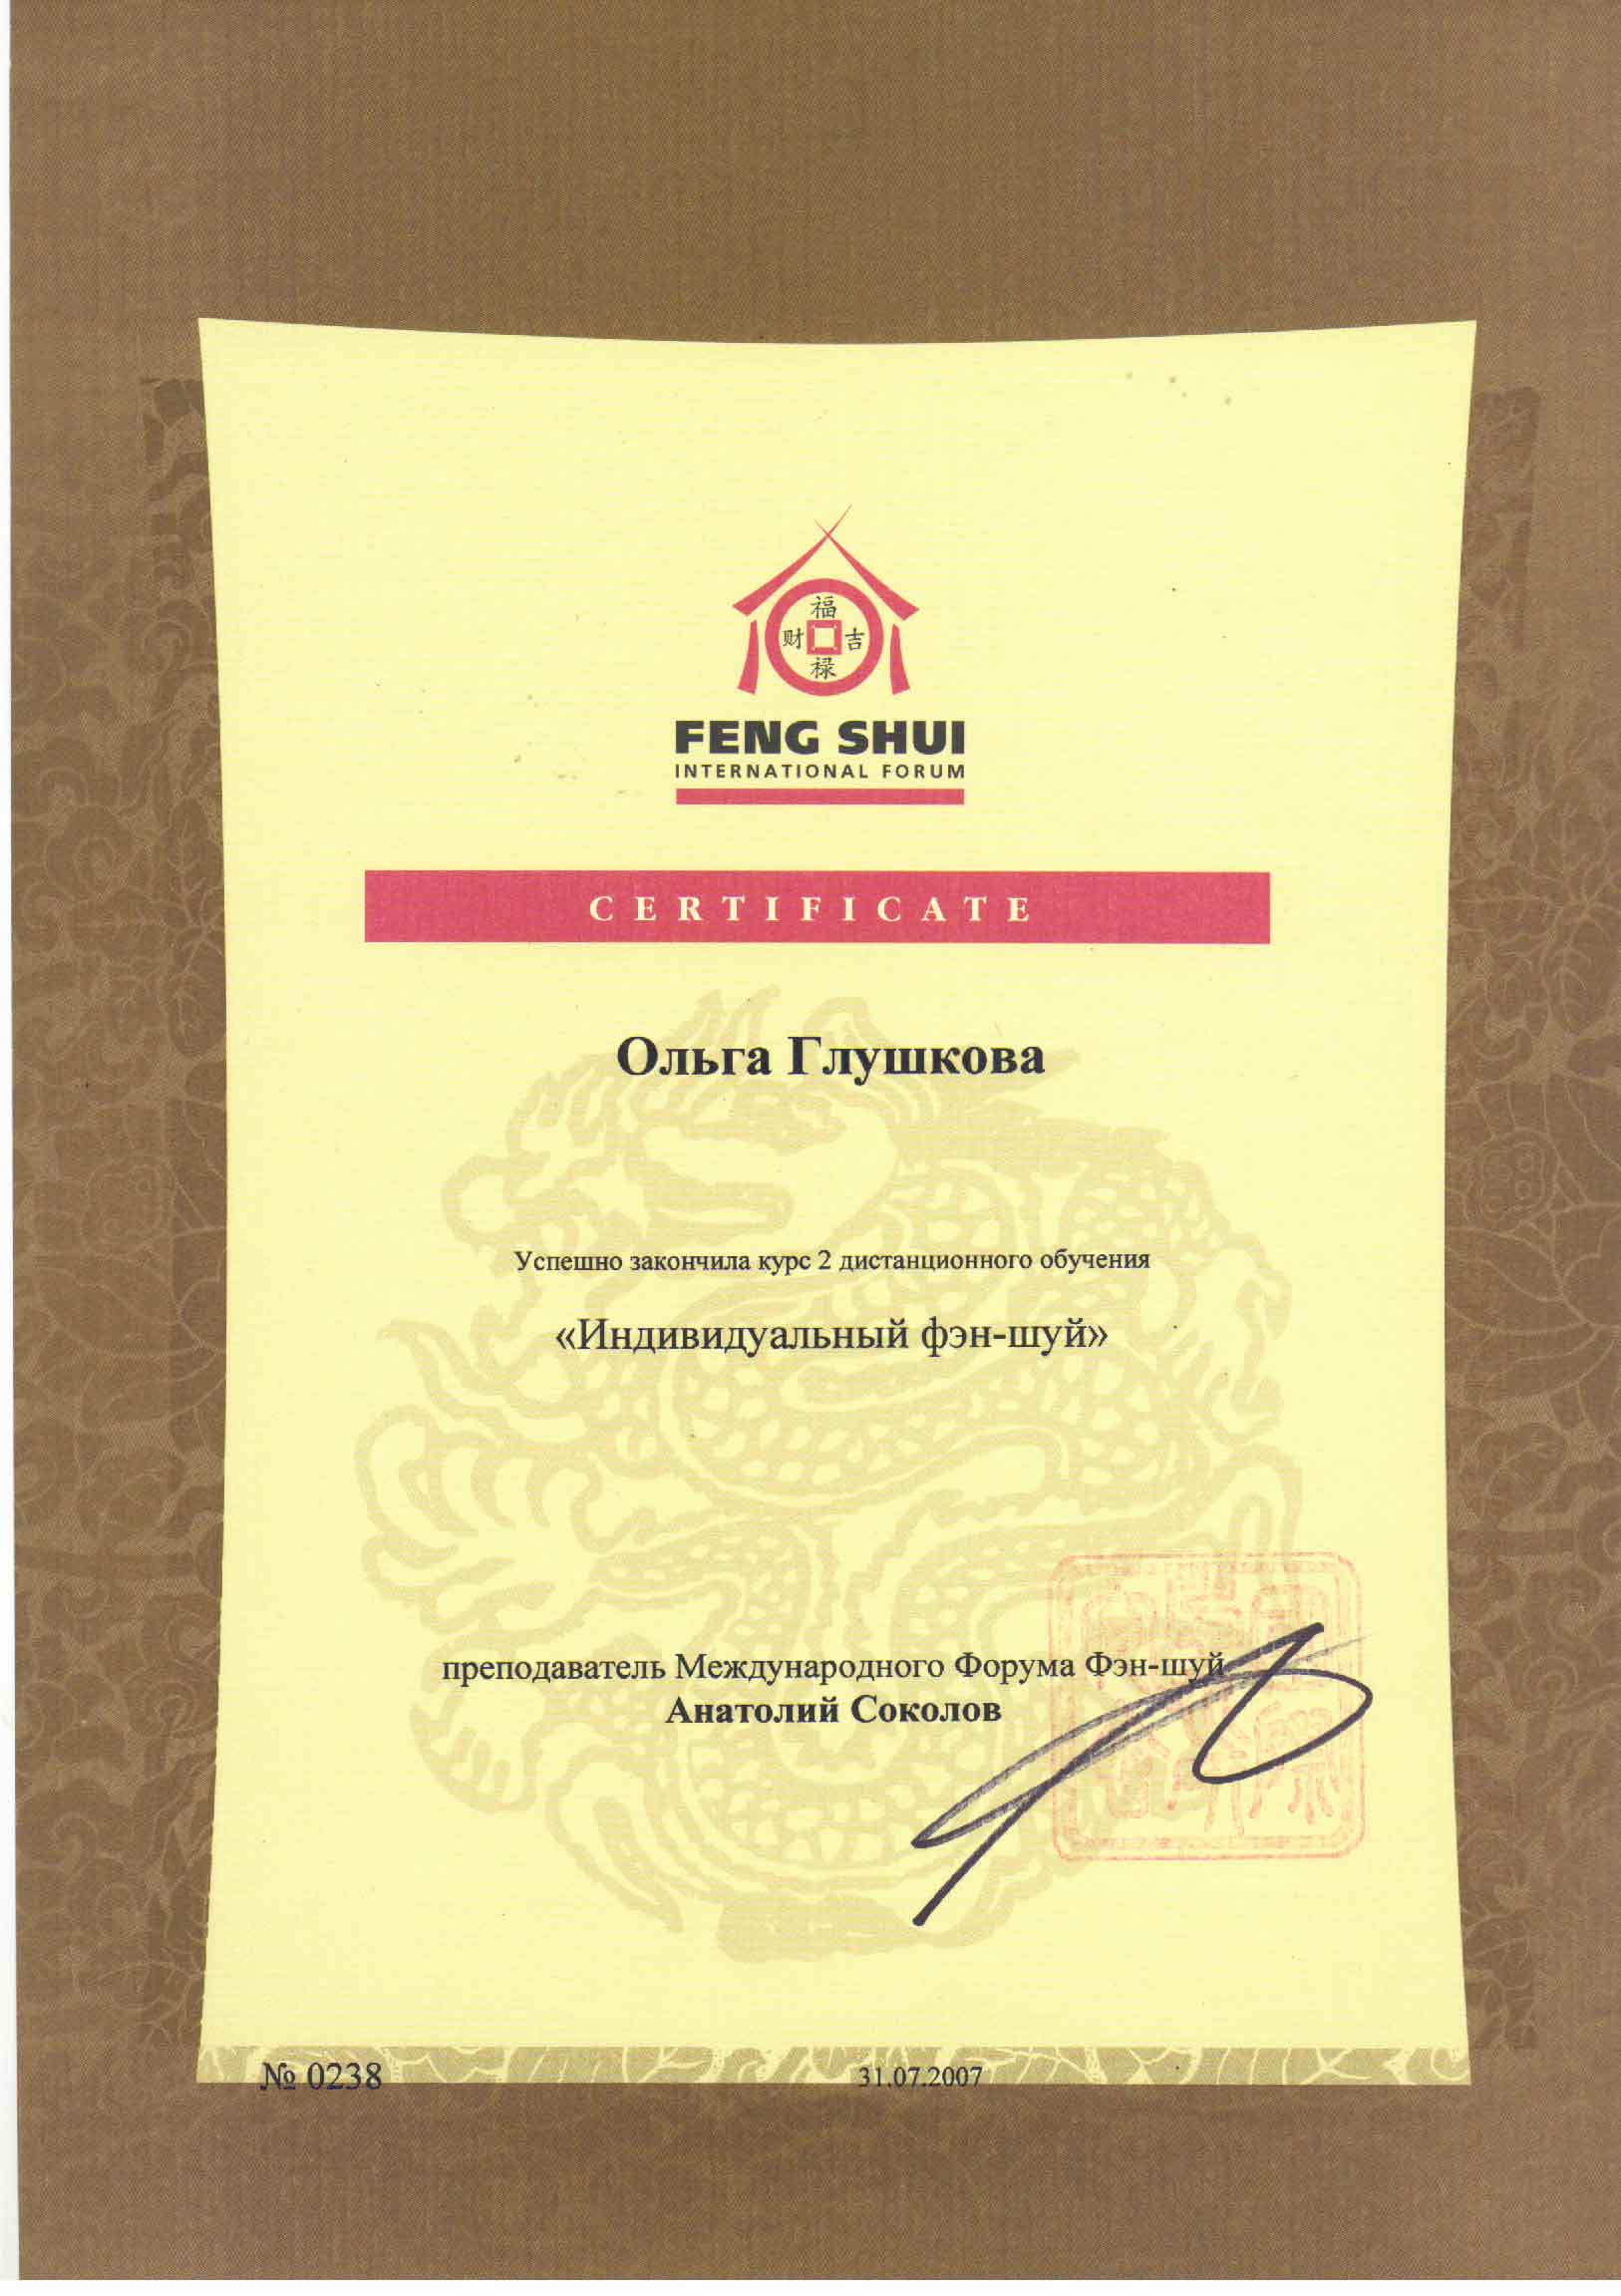 Certificate_1